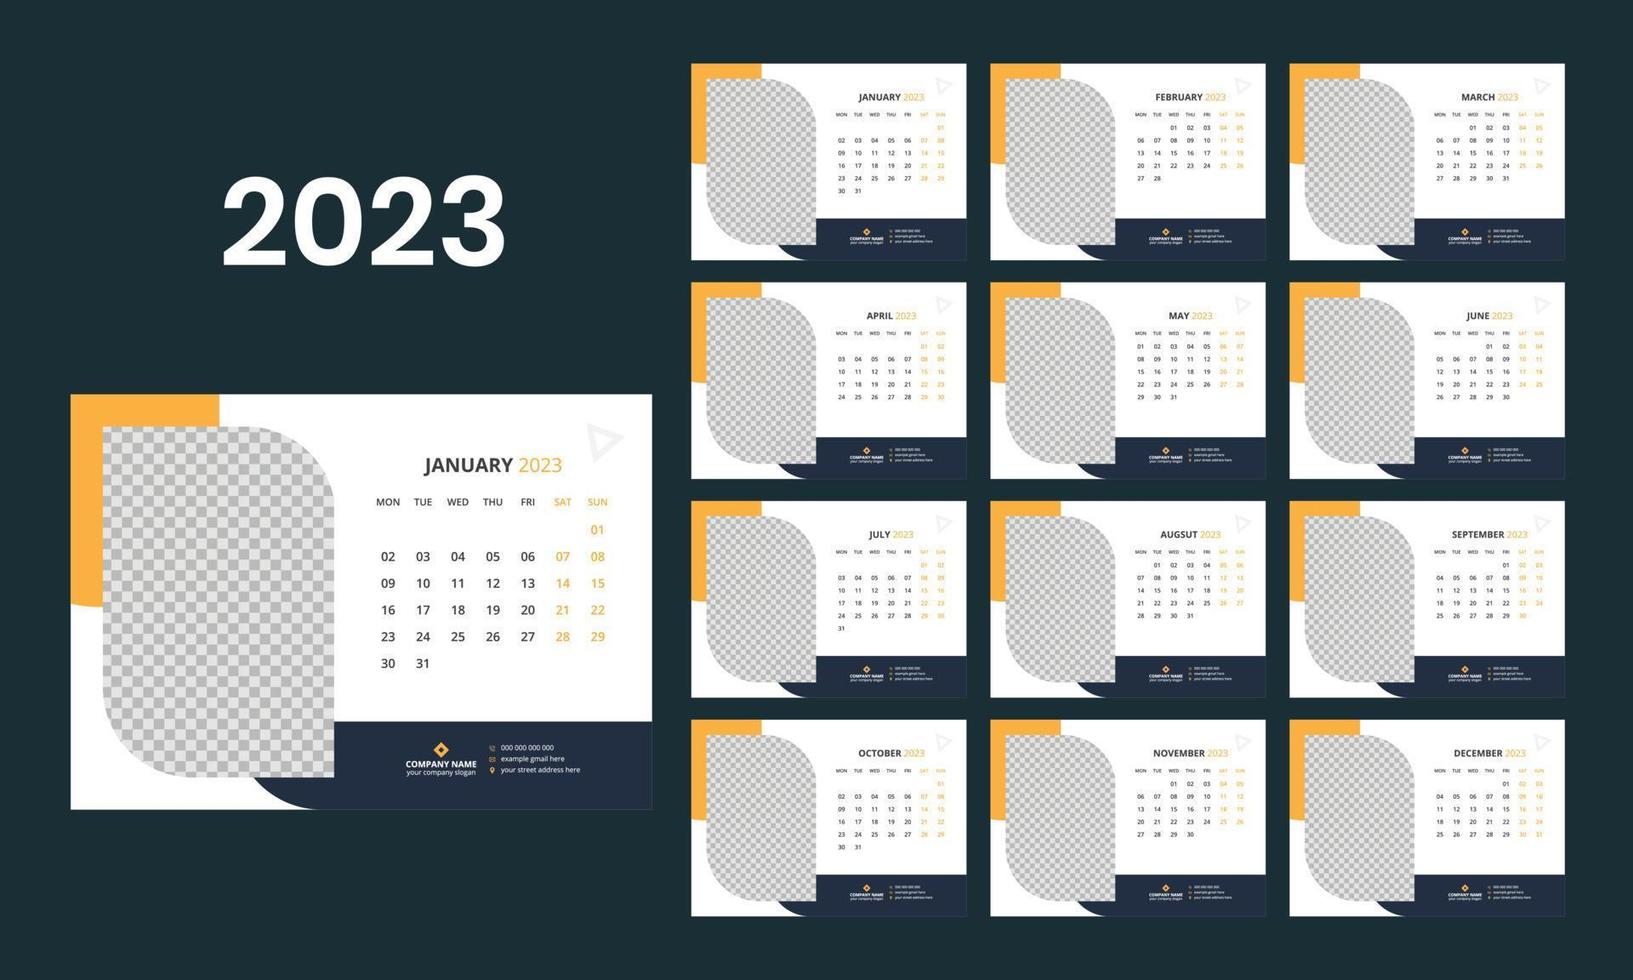 bureau kalender 2023 sjabloon vector